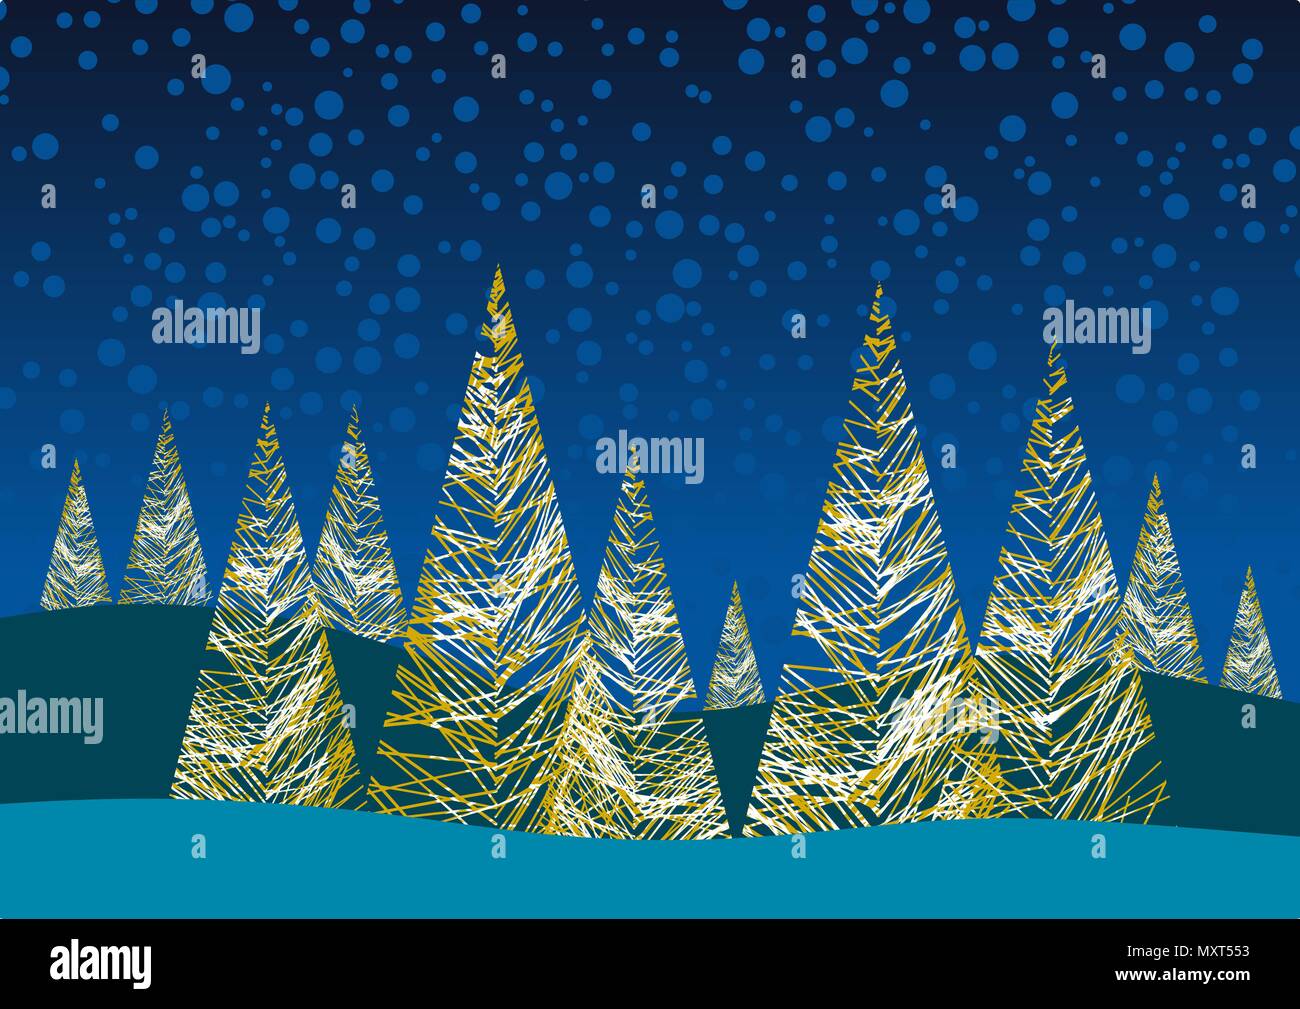 Immagini Natalizie Stilizzate.Sfondo Di Natale Con Alberi Stilizzati Illustrazione Vettoriale Immagine E Vettoriale Alamy